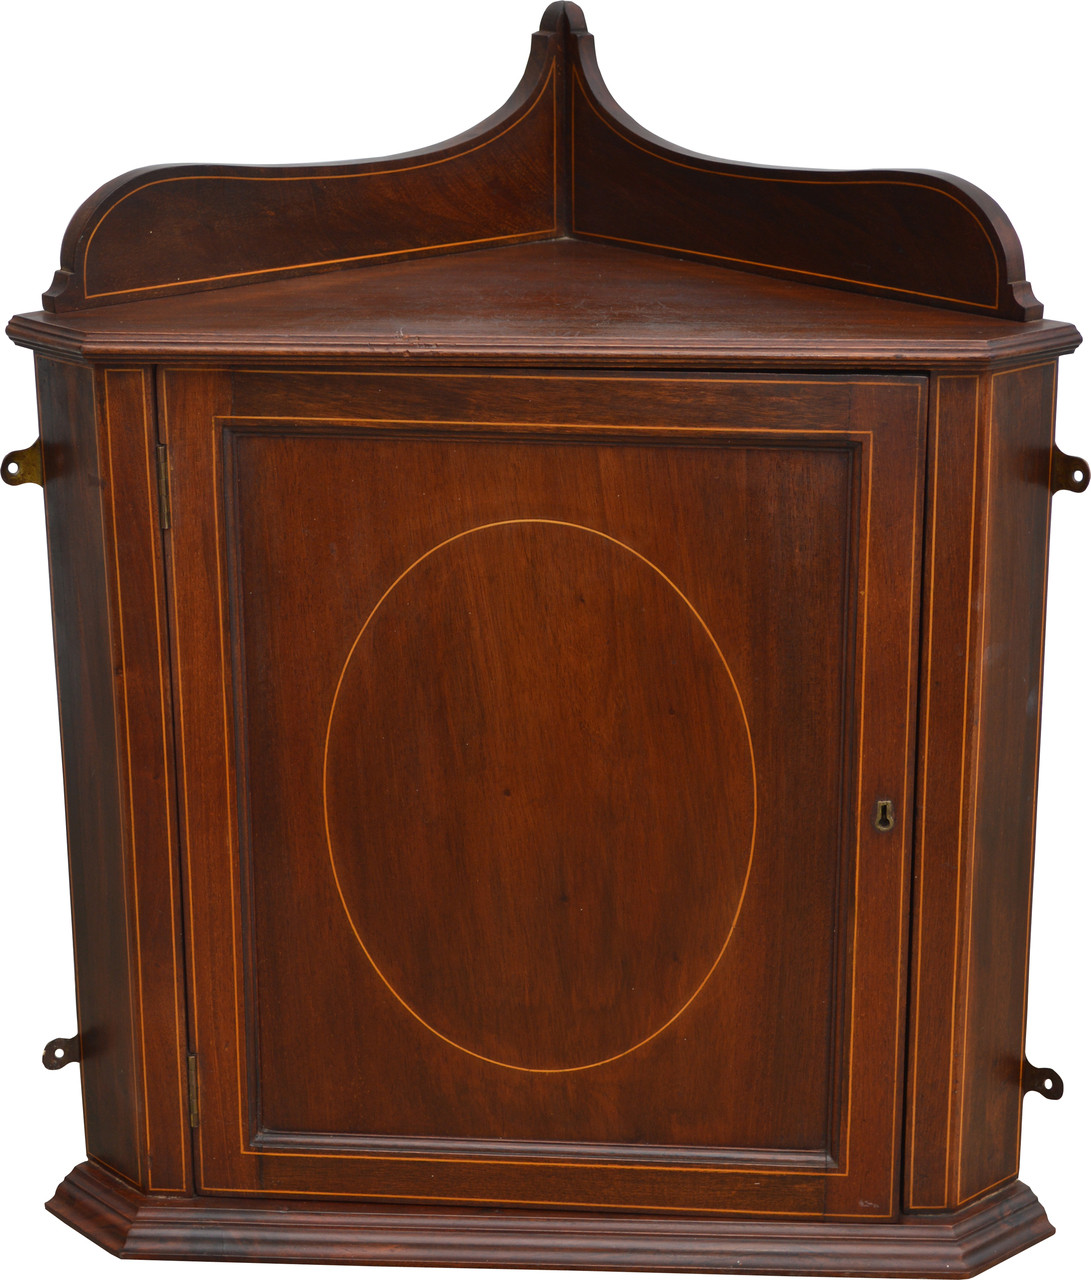 Sold Mahogany Inlaid Corner Medicine Cabinet Maine Antique Furniture